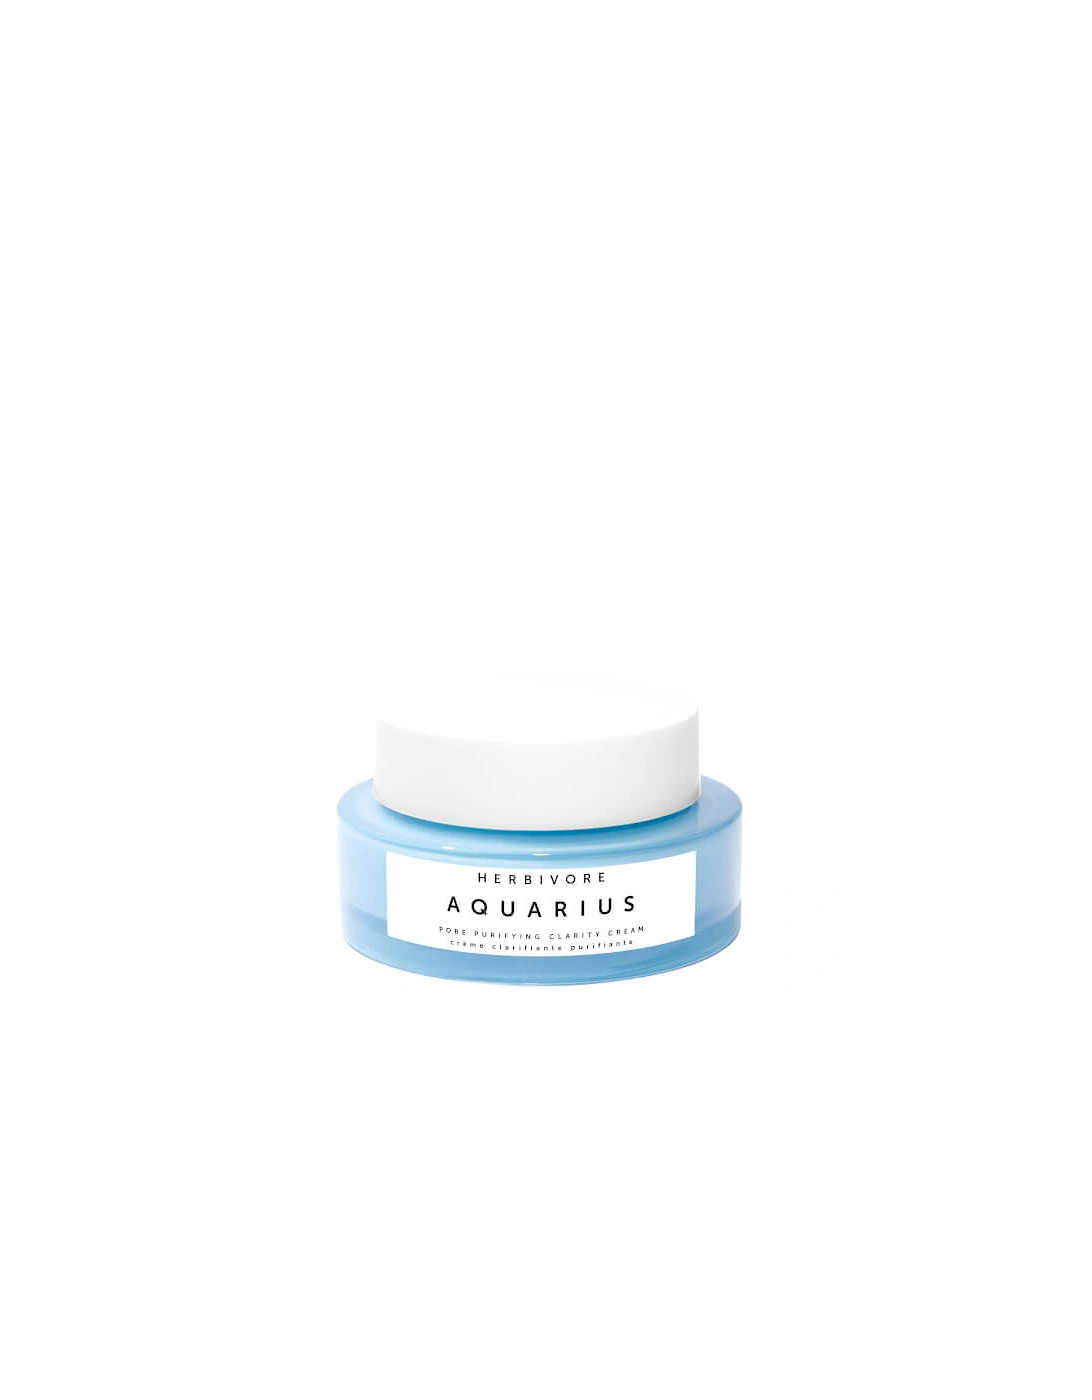 Herbivore Aquarius Pore Purifying Clarity Cream, 2 of 1